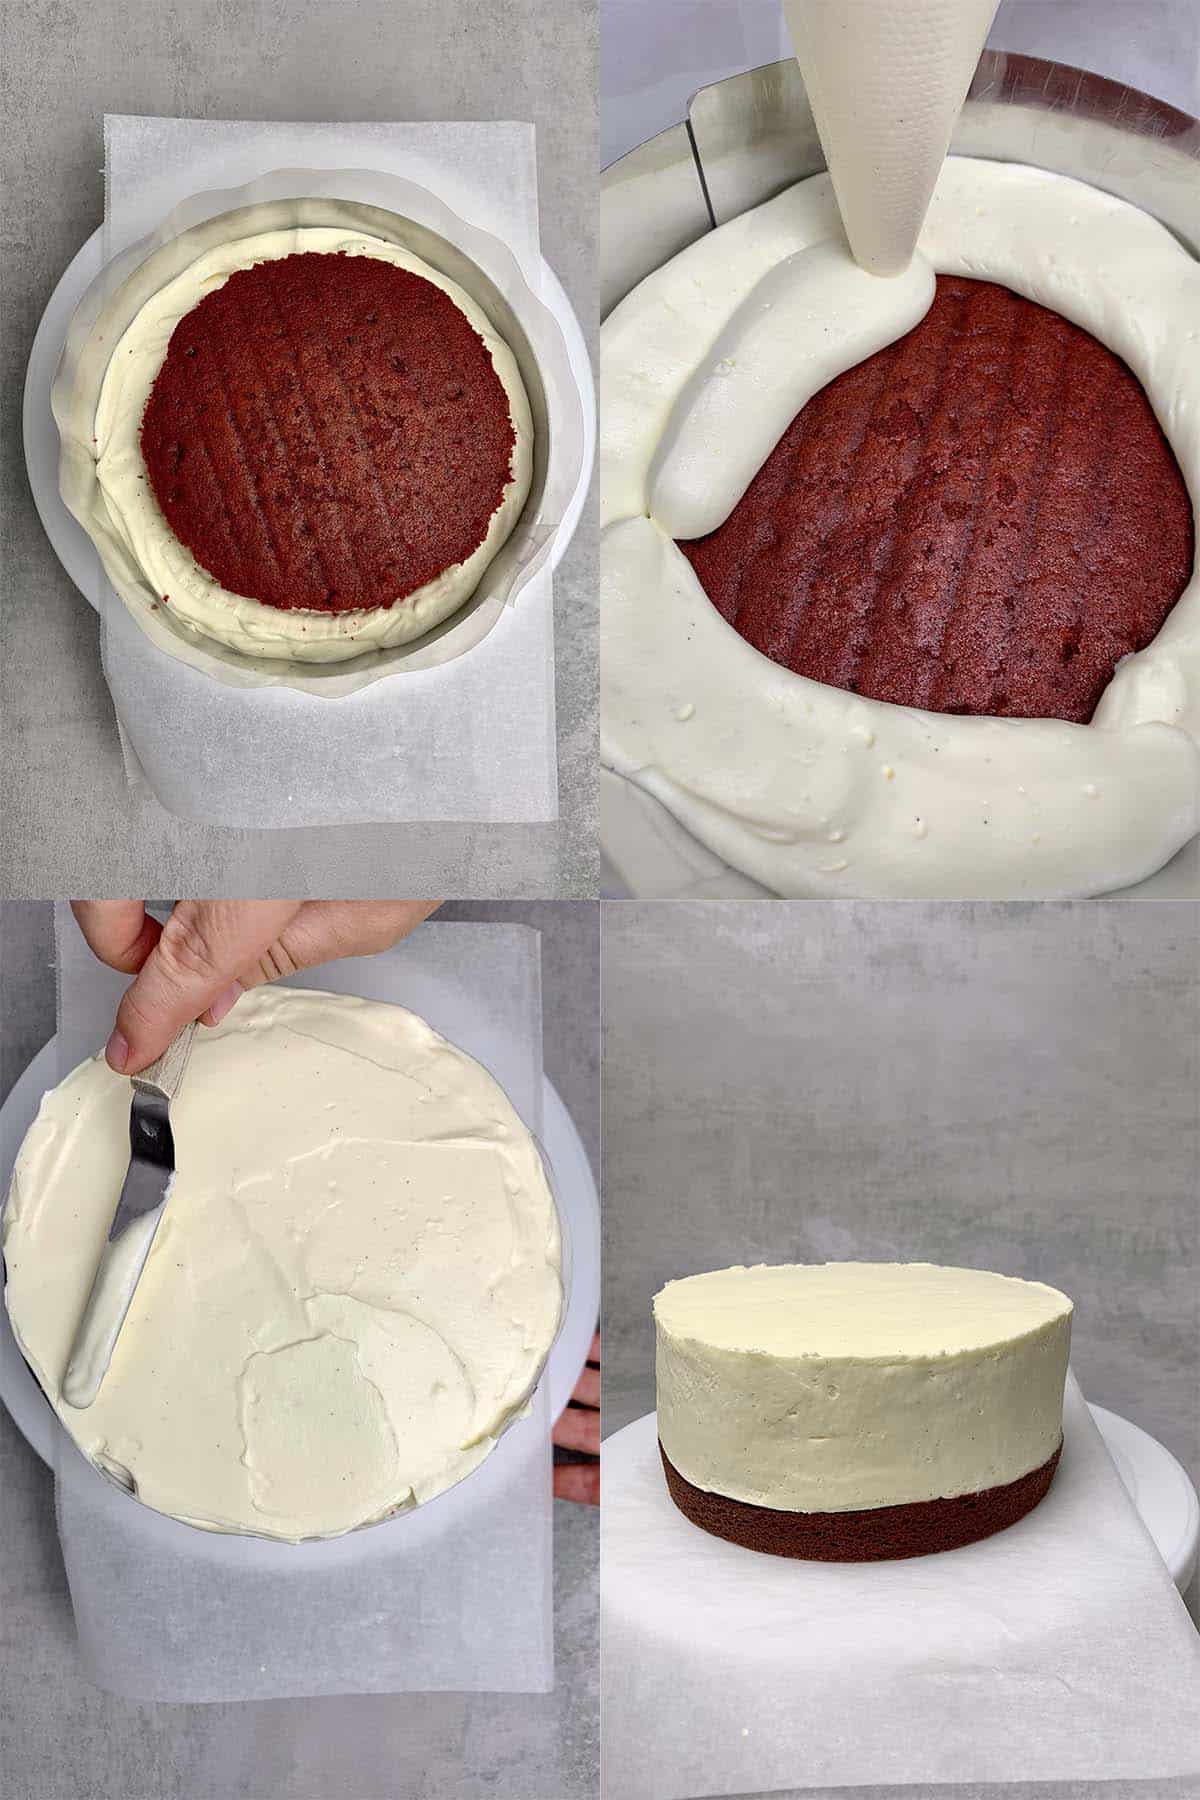 Red velvet cake assembly process.